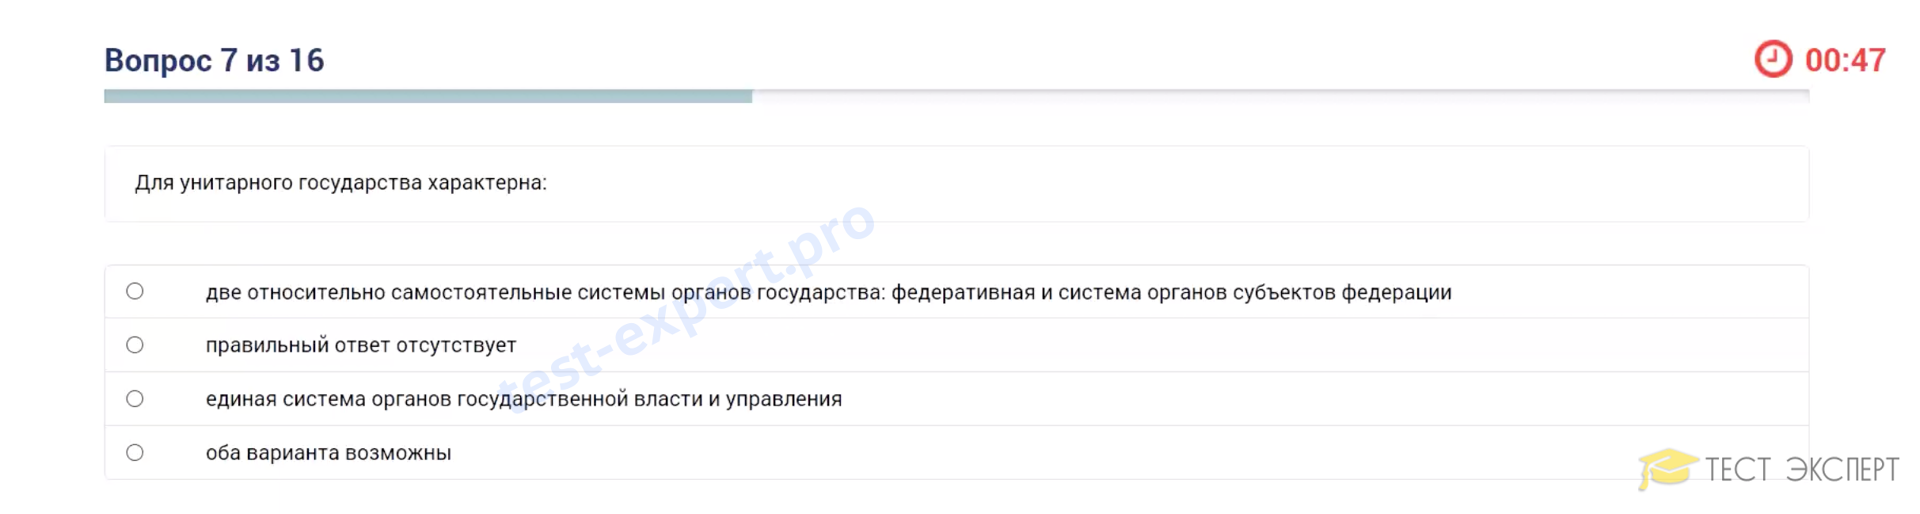 Скриншоты заданий и ответов с тестов Лидеры России 2020 года